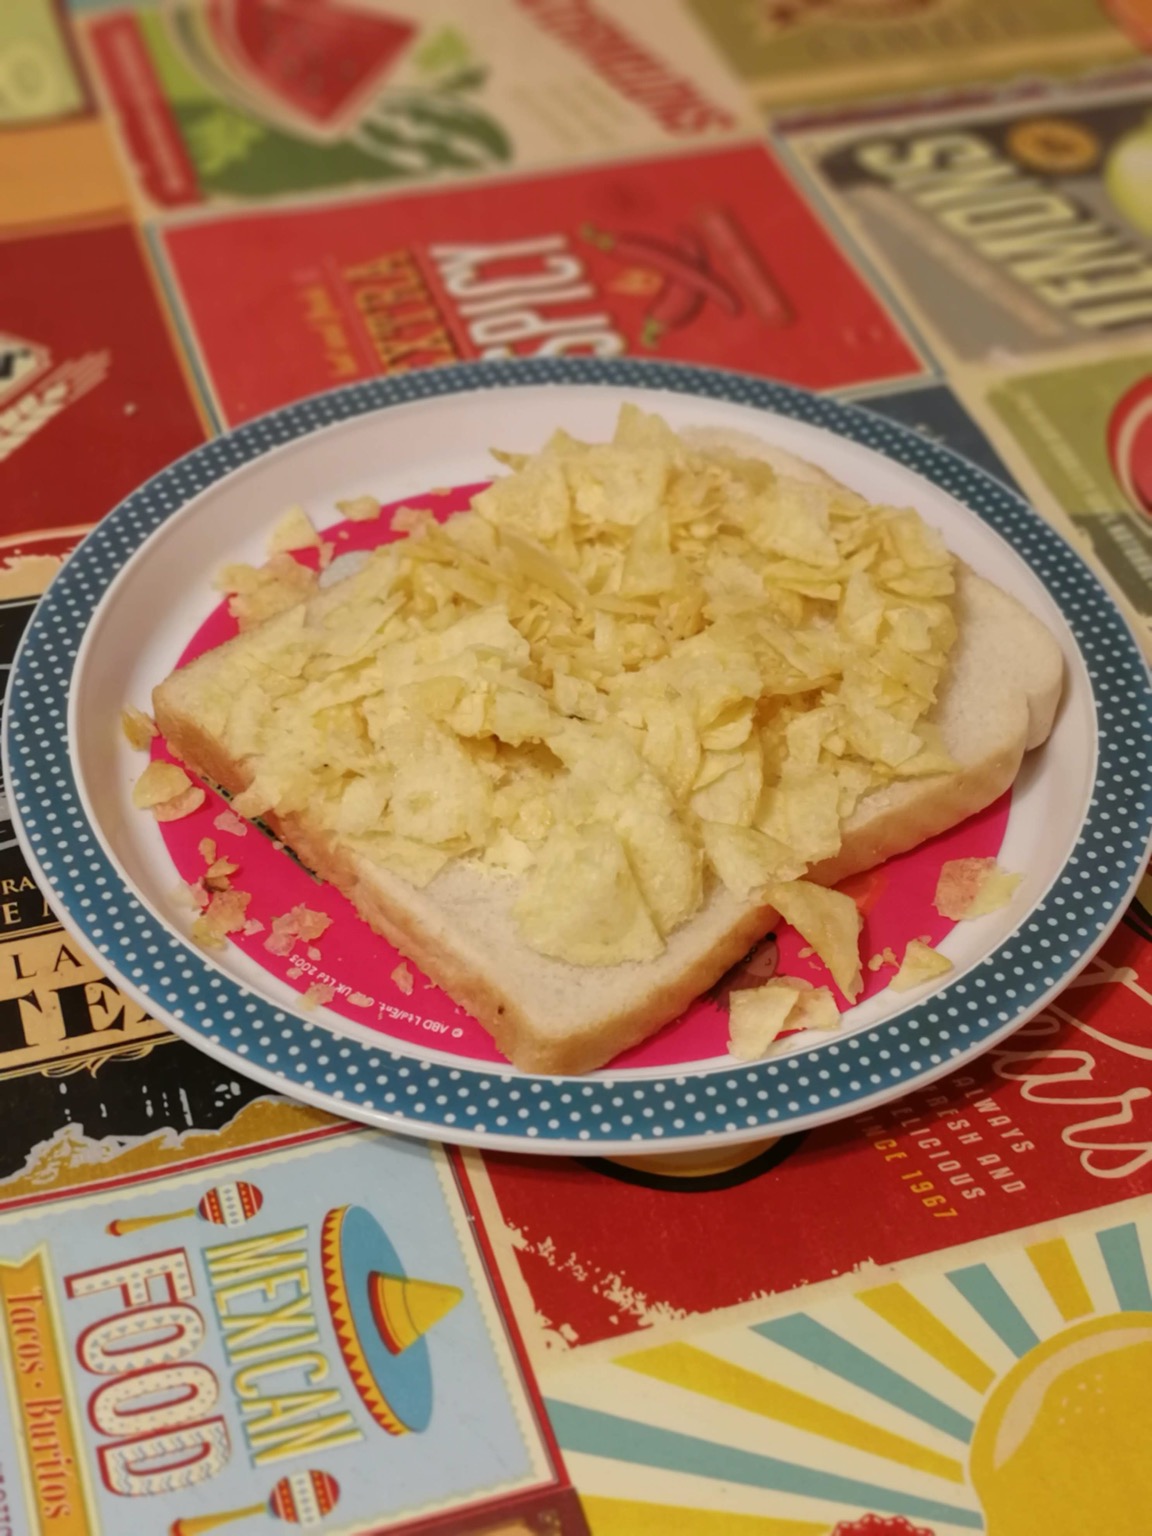 Open white crisp sandwich on a plate